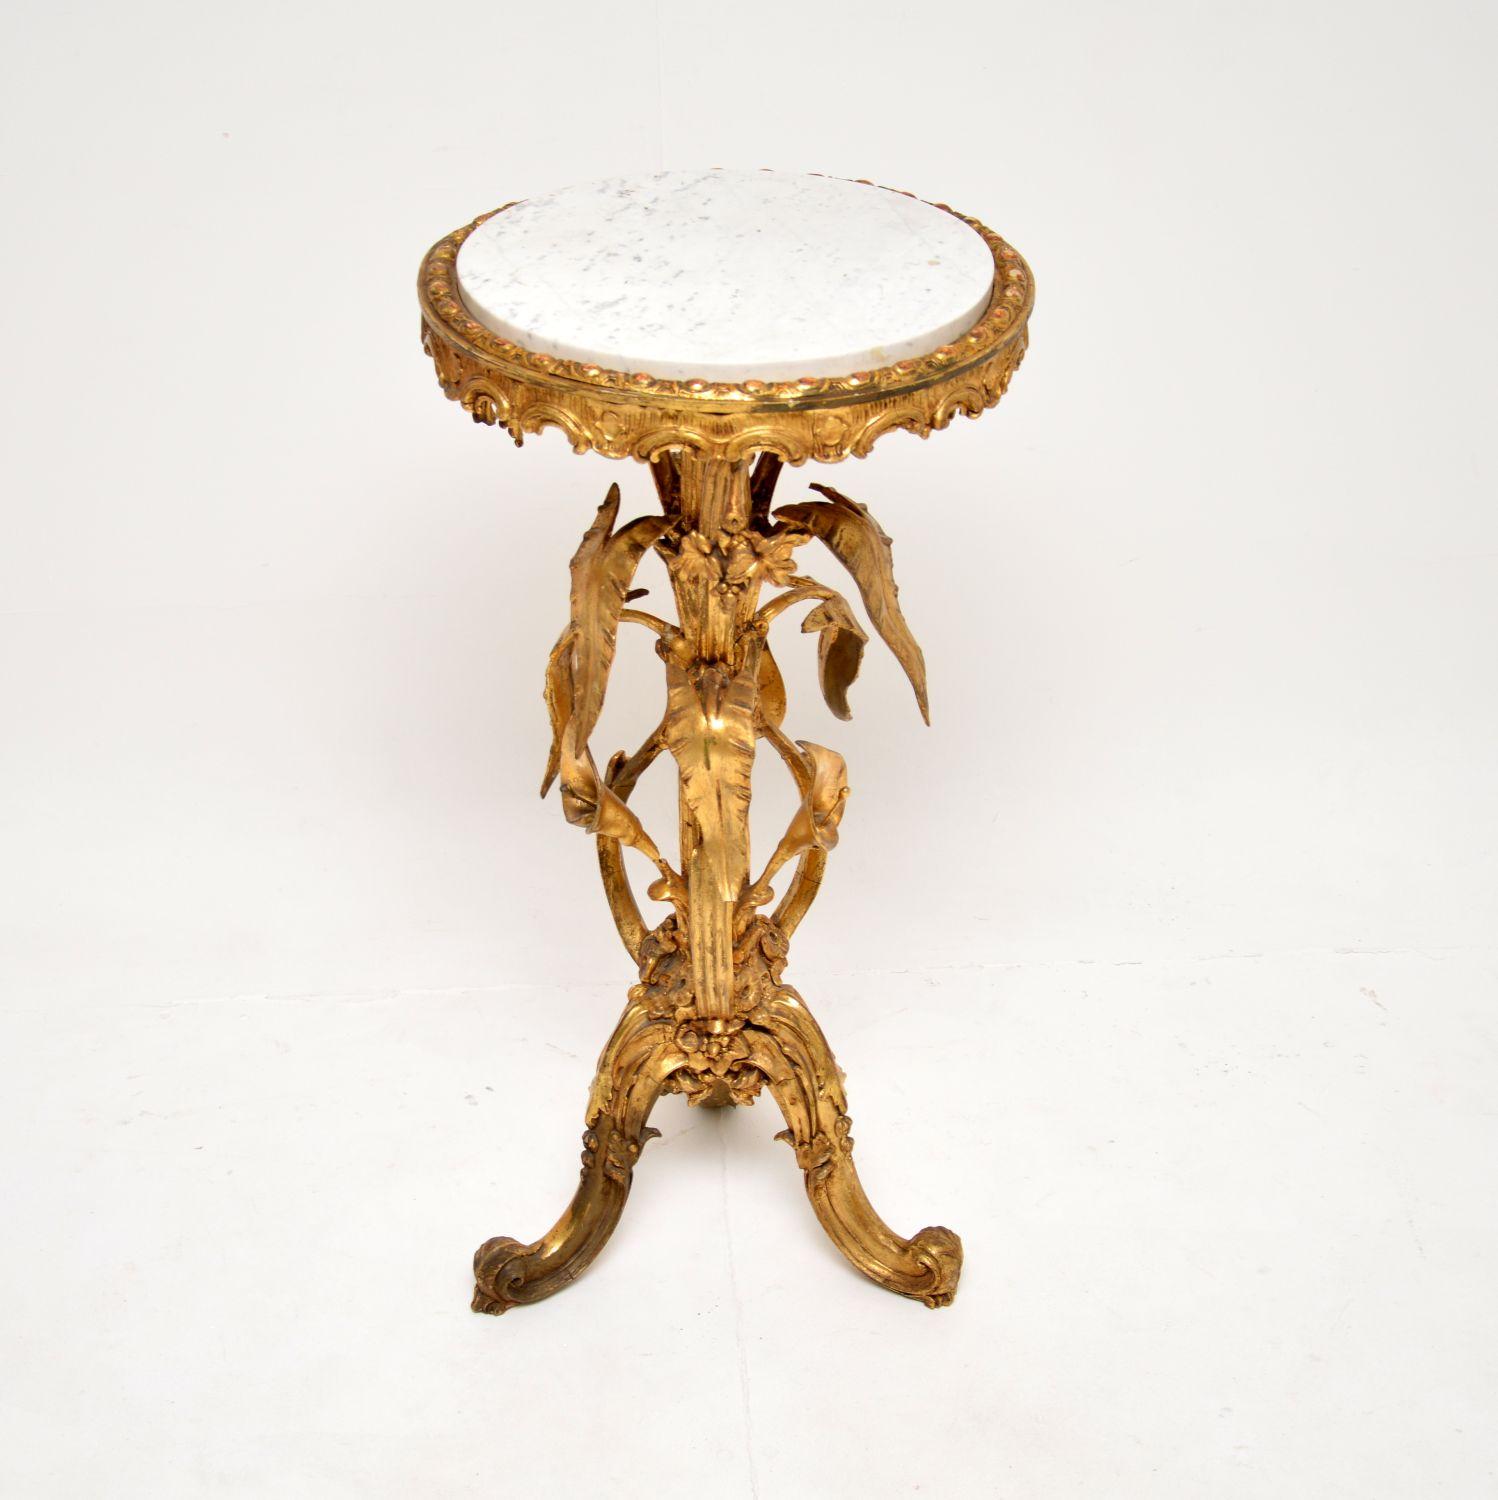 Magnifique et très ancienne table d'appoint en bois doré à plateau de marbre. Nous pensons qu'il a été fabriqué en France et qu'il date des années 1820-1840, mais il est très difficile de le dater exactement, car il est tellement unique.

Il est